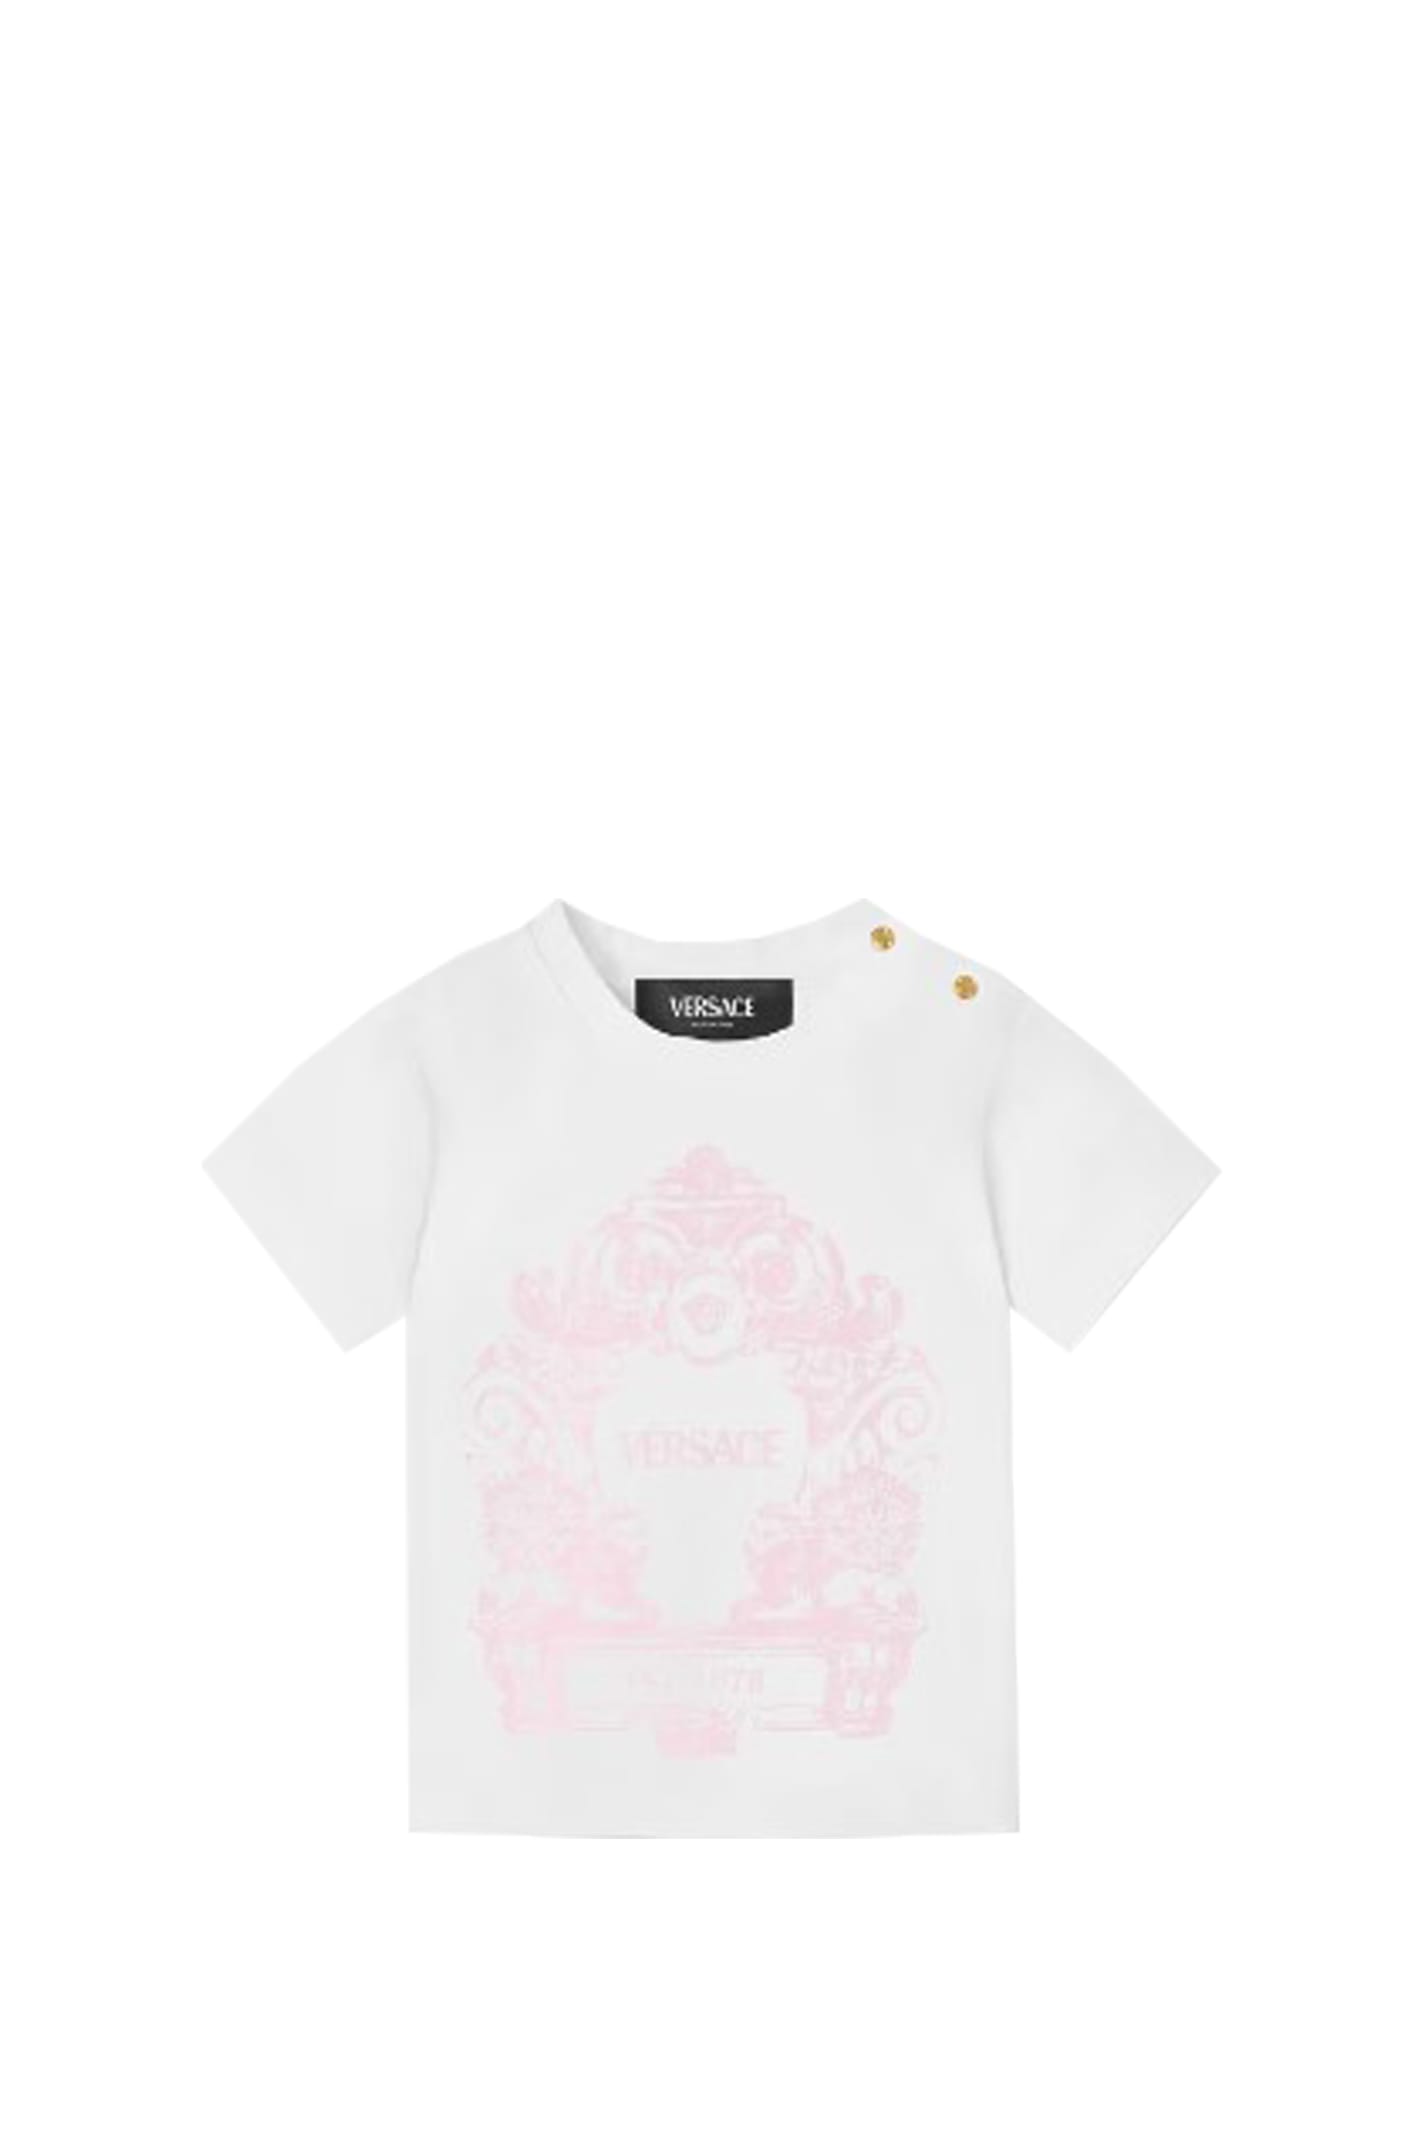 Versace Cartouche T-shirt